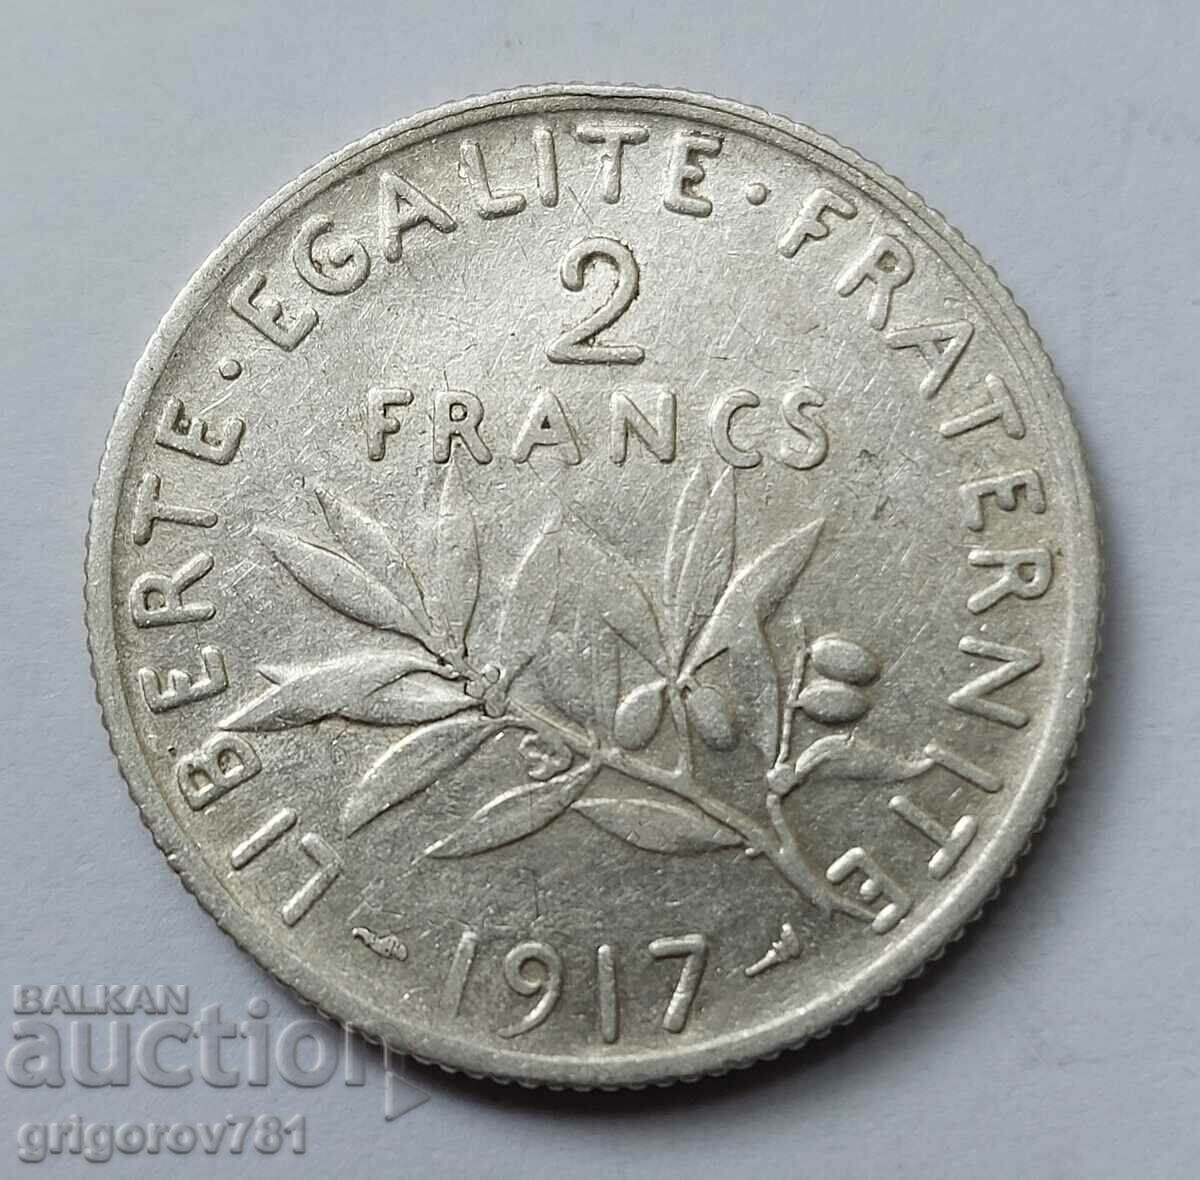 2 Franci Argint Franta 1917 - Moneda de argint #93